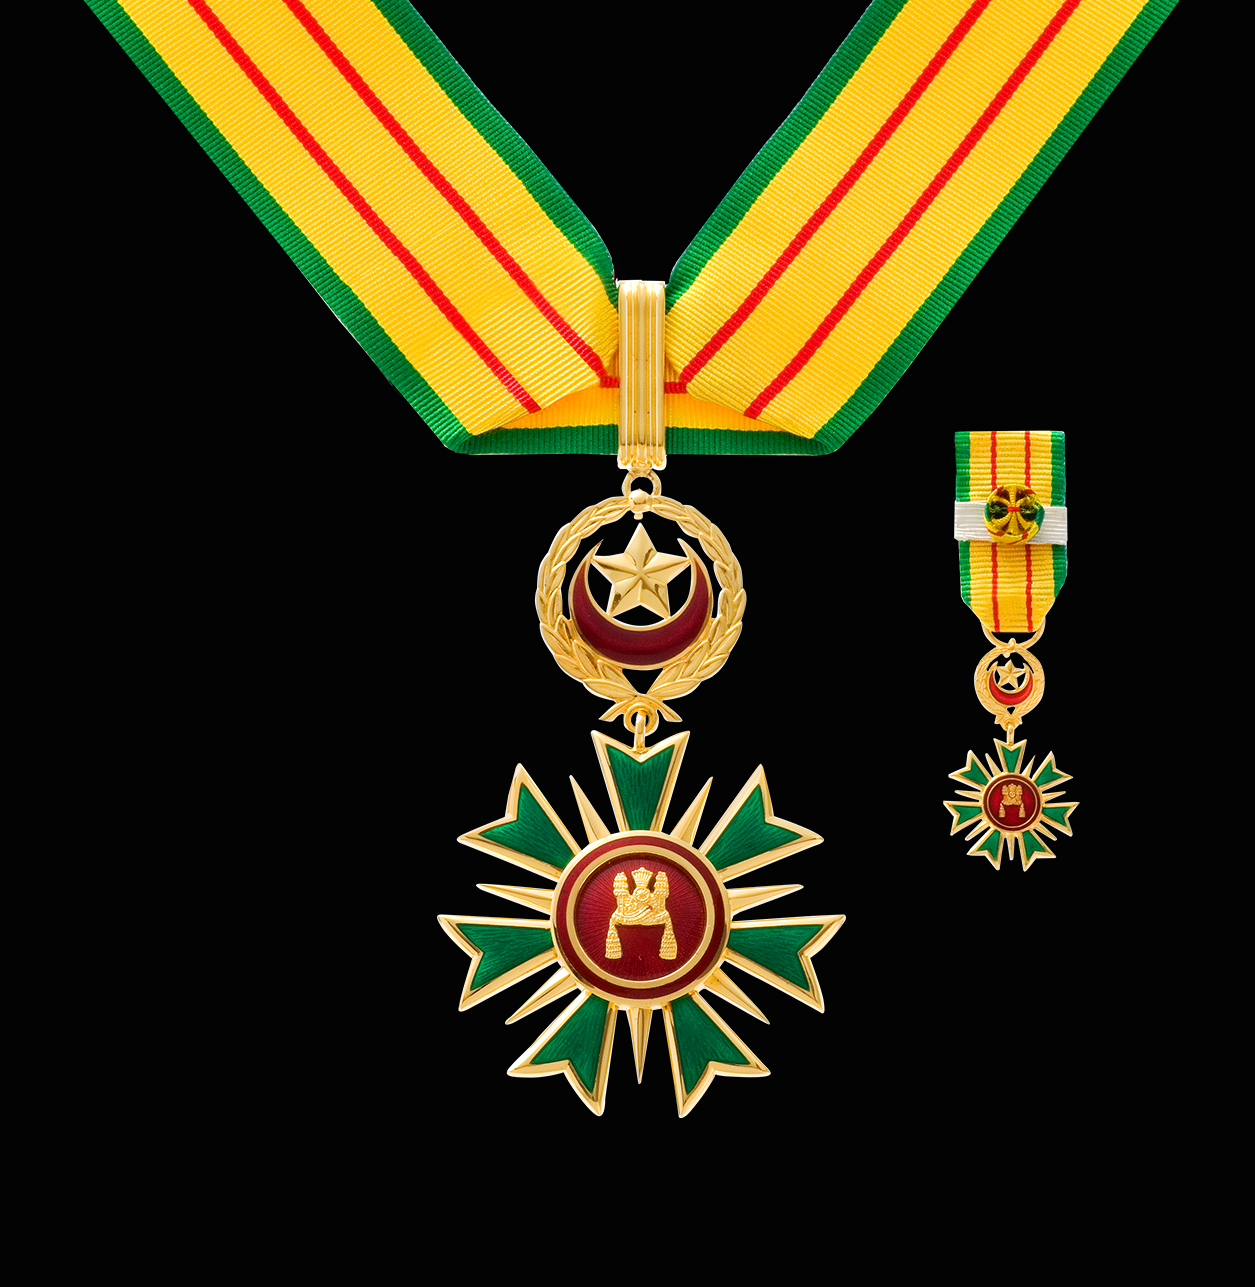 The Most Blessed Order of Setia Negara Brunei